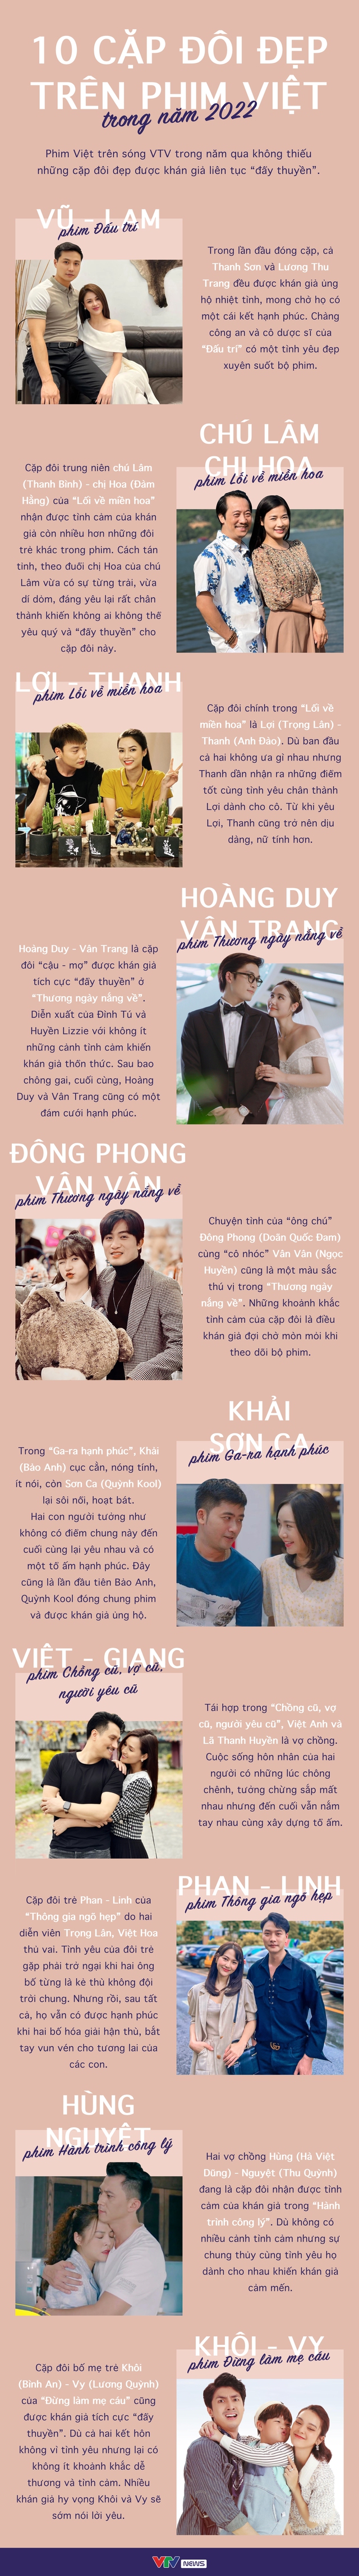 Đối với những ai yêu thích phim Việt, cặp đôi đẹp trên phim Việt là một trong những yếu tố quan trọng hình thành cho bộ phim hoàn hảo. Chỉ cần nhìn thấy cặp đôi ấy, bạn sẽ cảm thấy tình yêu đang trong khoảnh khắc dễ thương nhất. Hãy xem ảnh đôi tình nhân này và cảm nhận!